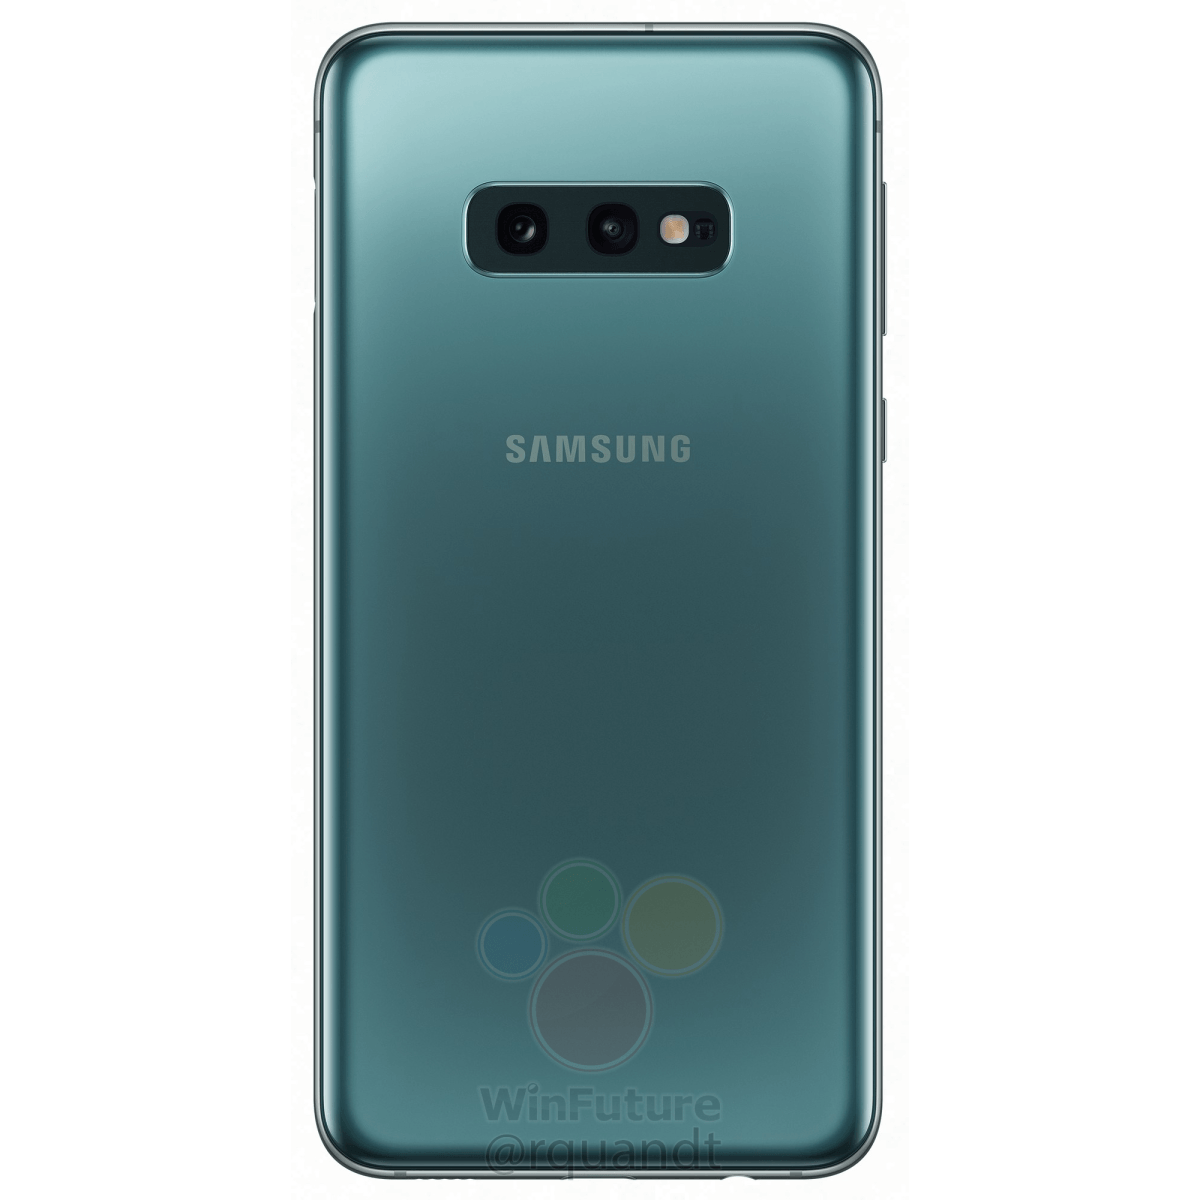 Samsung Galaxy S10E : le petit Galaxy S10 se dévoile sous toutes les
coutures FrAndroid